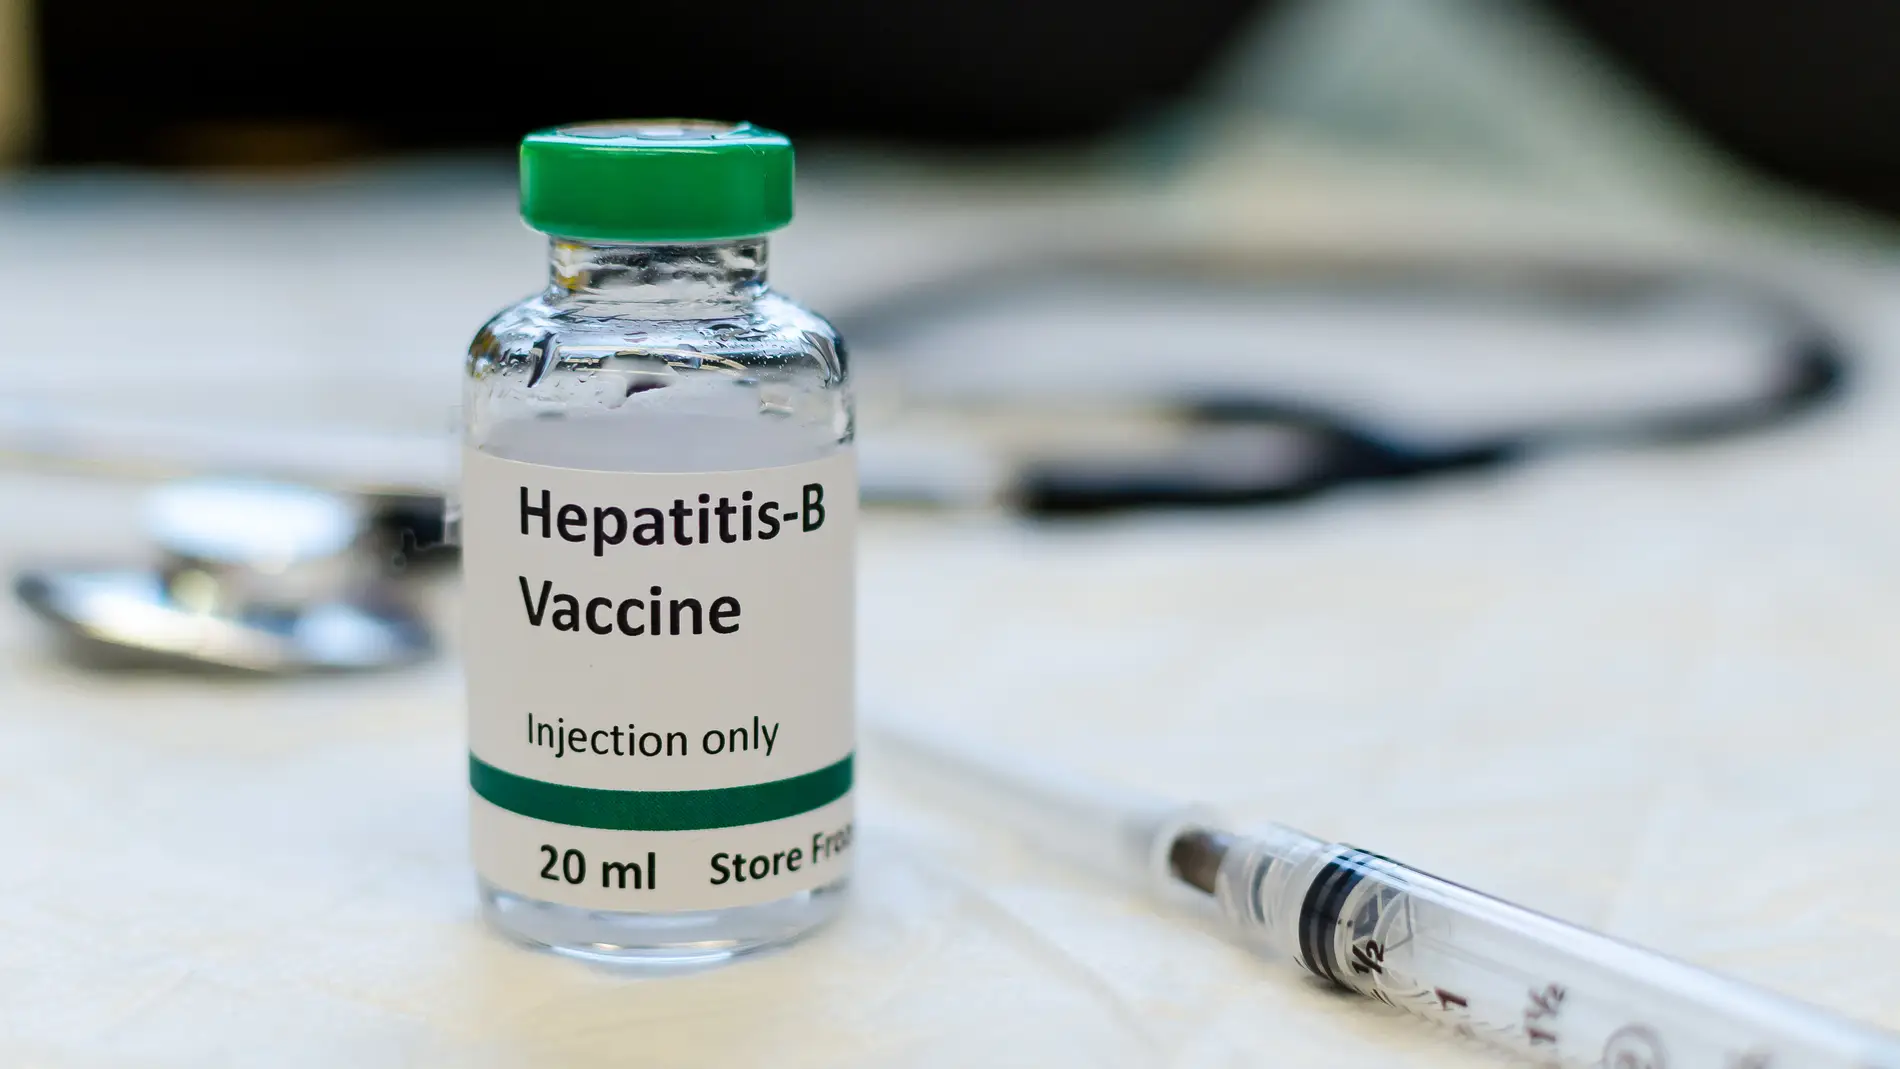 Vacuna contra la hepatitis